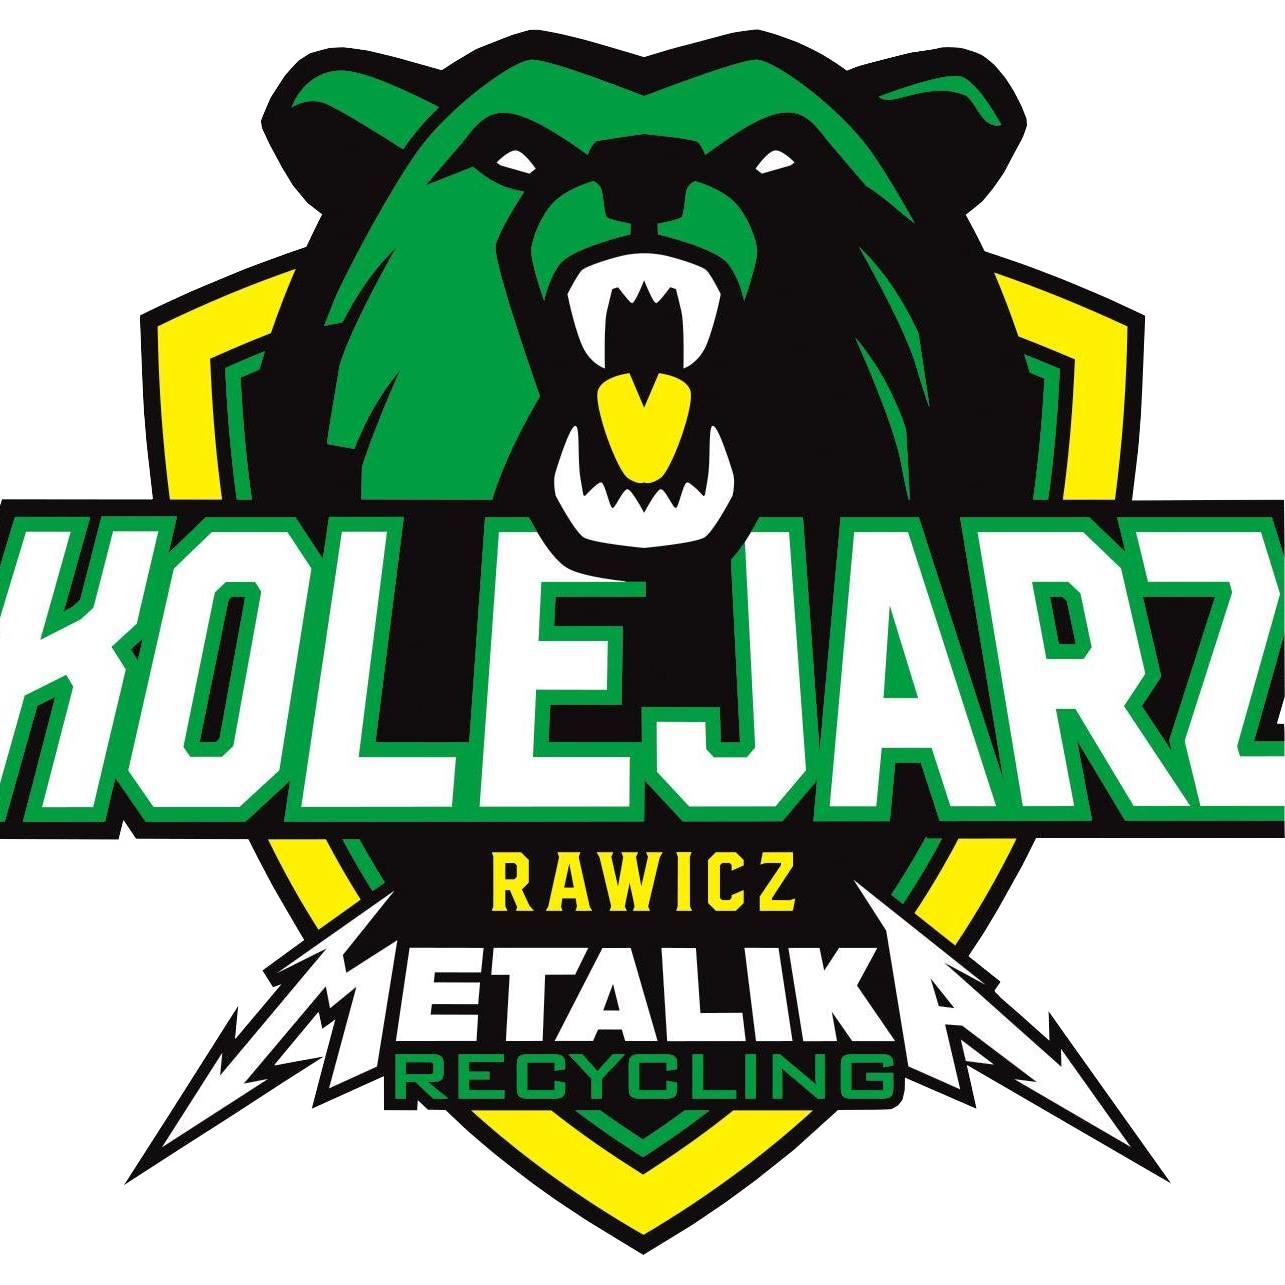 Texom Stal Rzeszów Logo